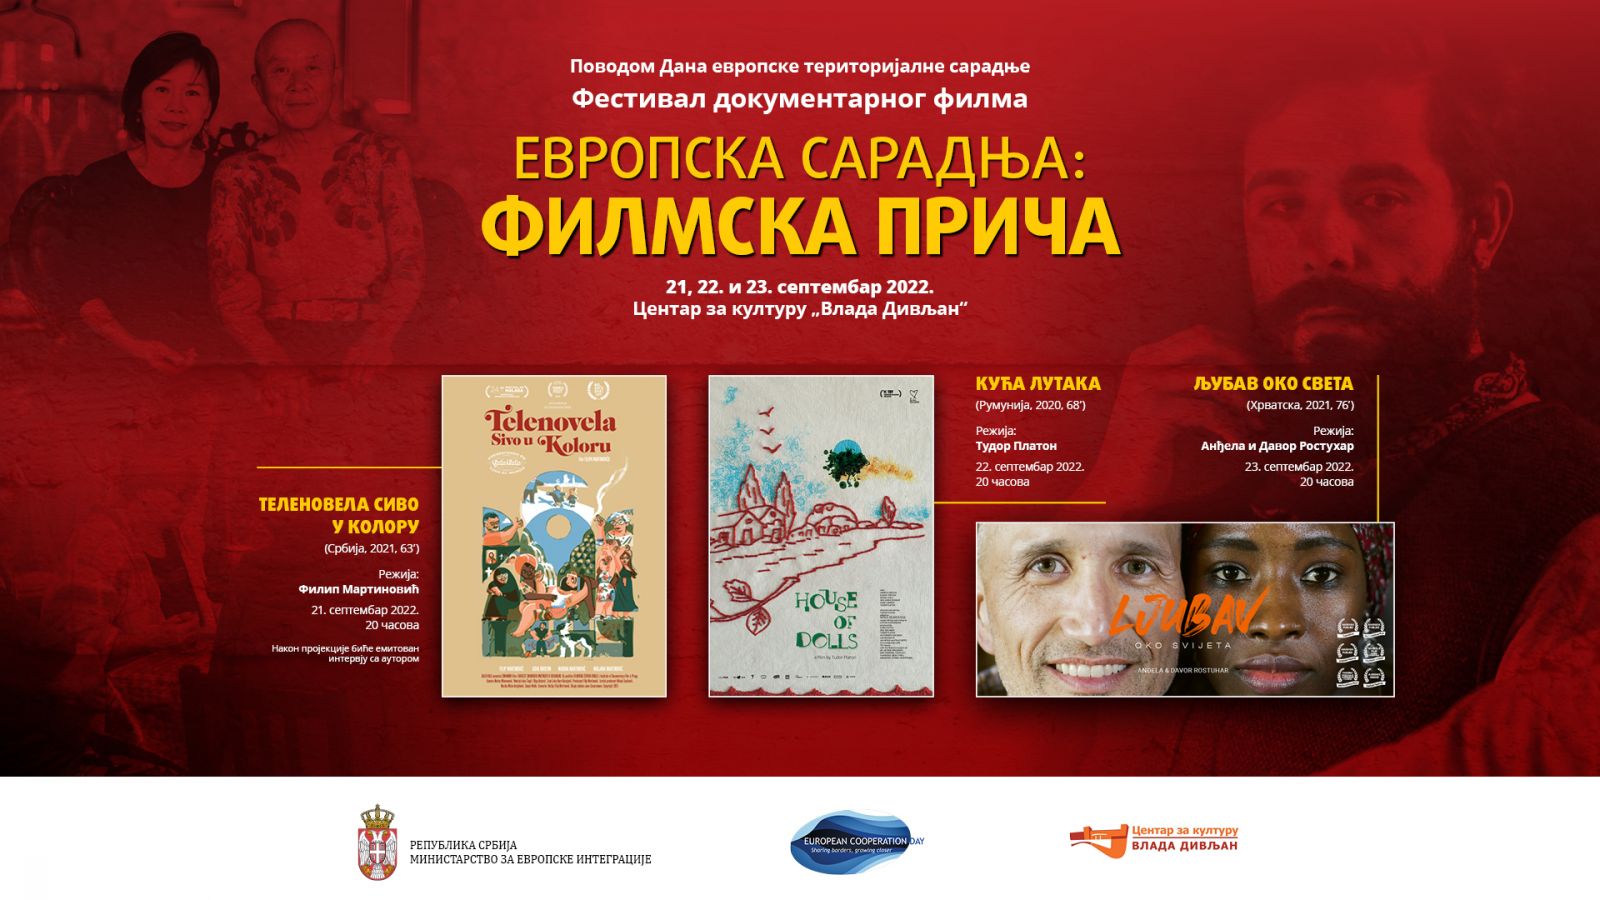 Documentary Film Festival ‘European Cooperation: Film Story’ from 21 to 23 September in Belgrade